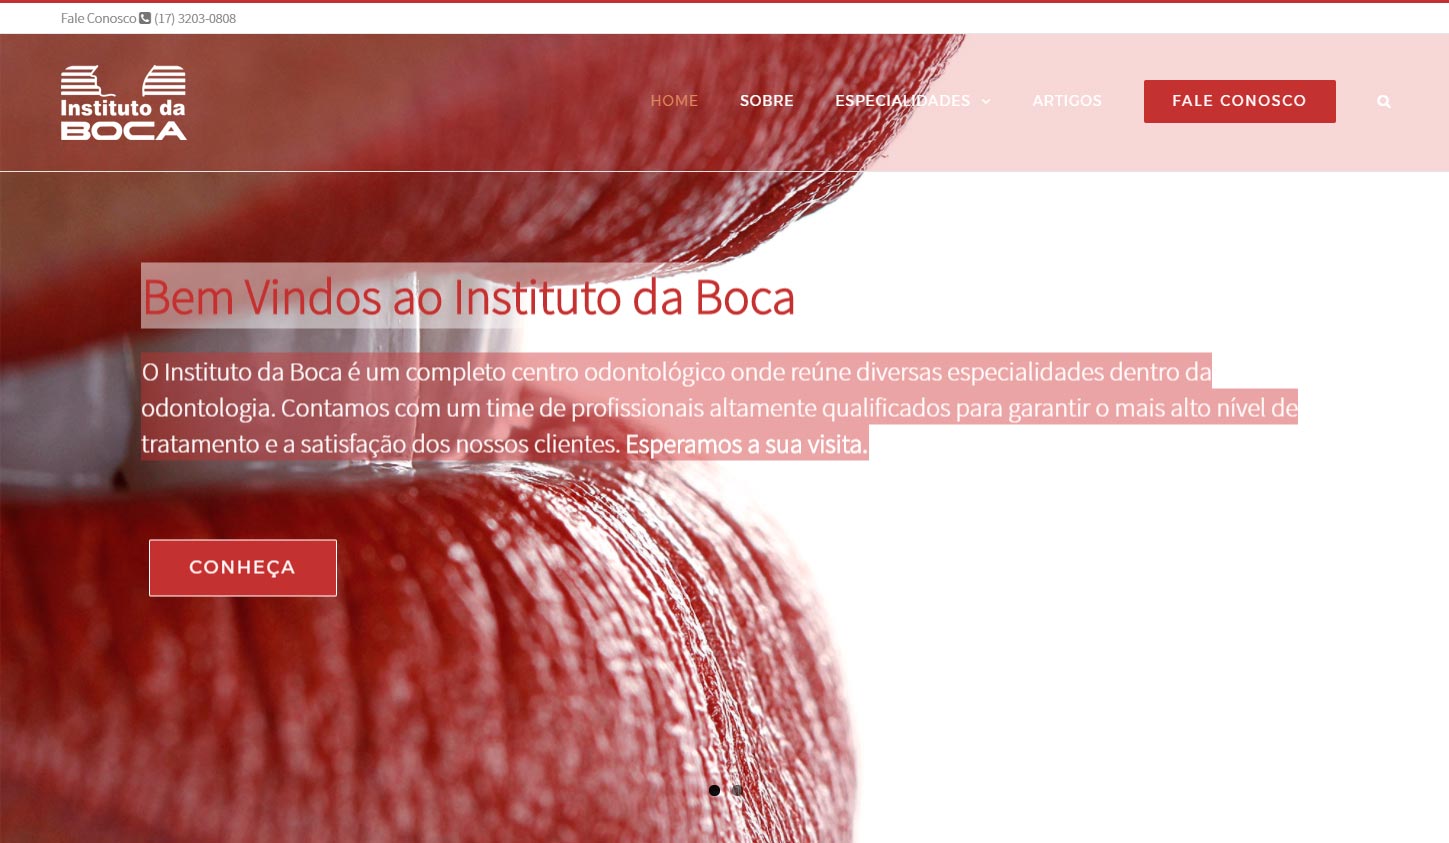 (c) Institutodaboca.com.br